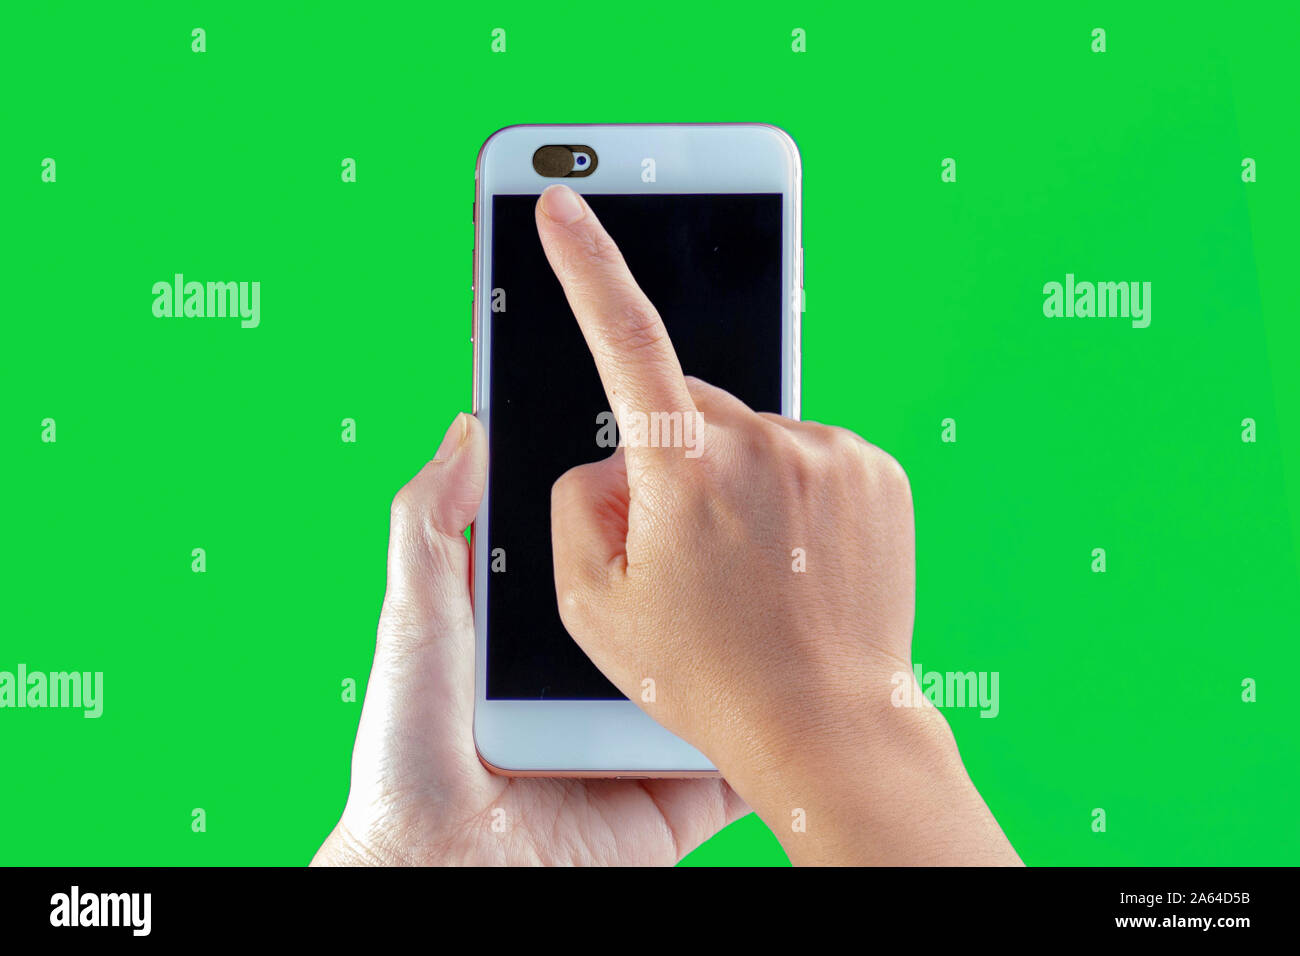 Datenschutz schieben Sie die Abdeckung der Kamera, Webcam Abdeckung für Laptop mit einem grünen Bildschirm Stockfoto